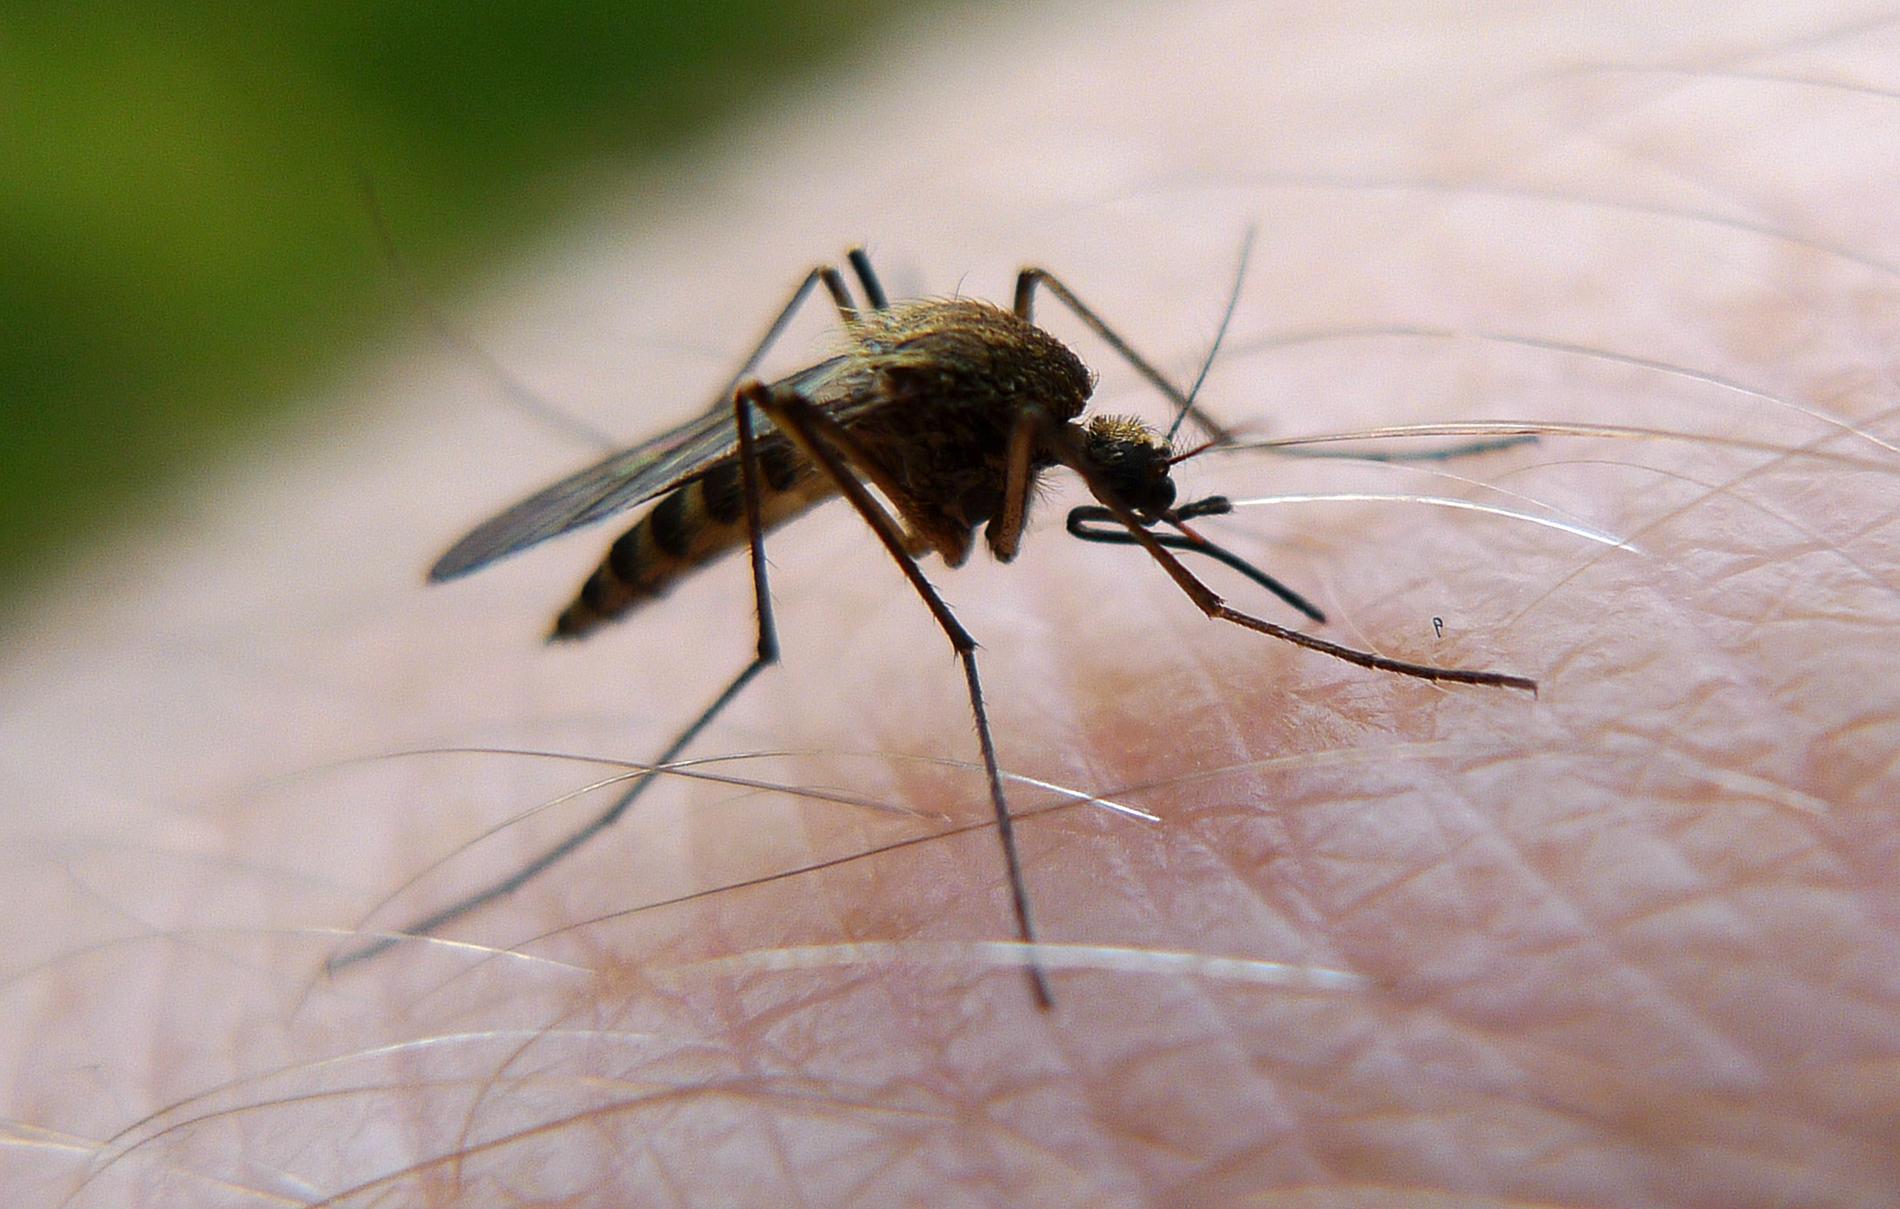 När myggan inte kan känna doften av svett får den svårt att hitta människor att bita, enligt en ny studie. Arkivbild.